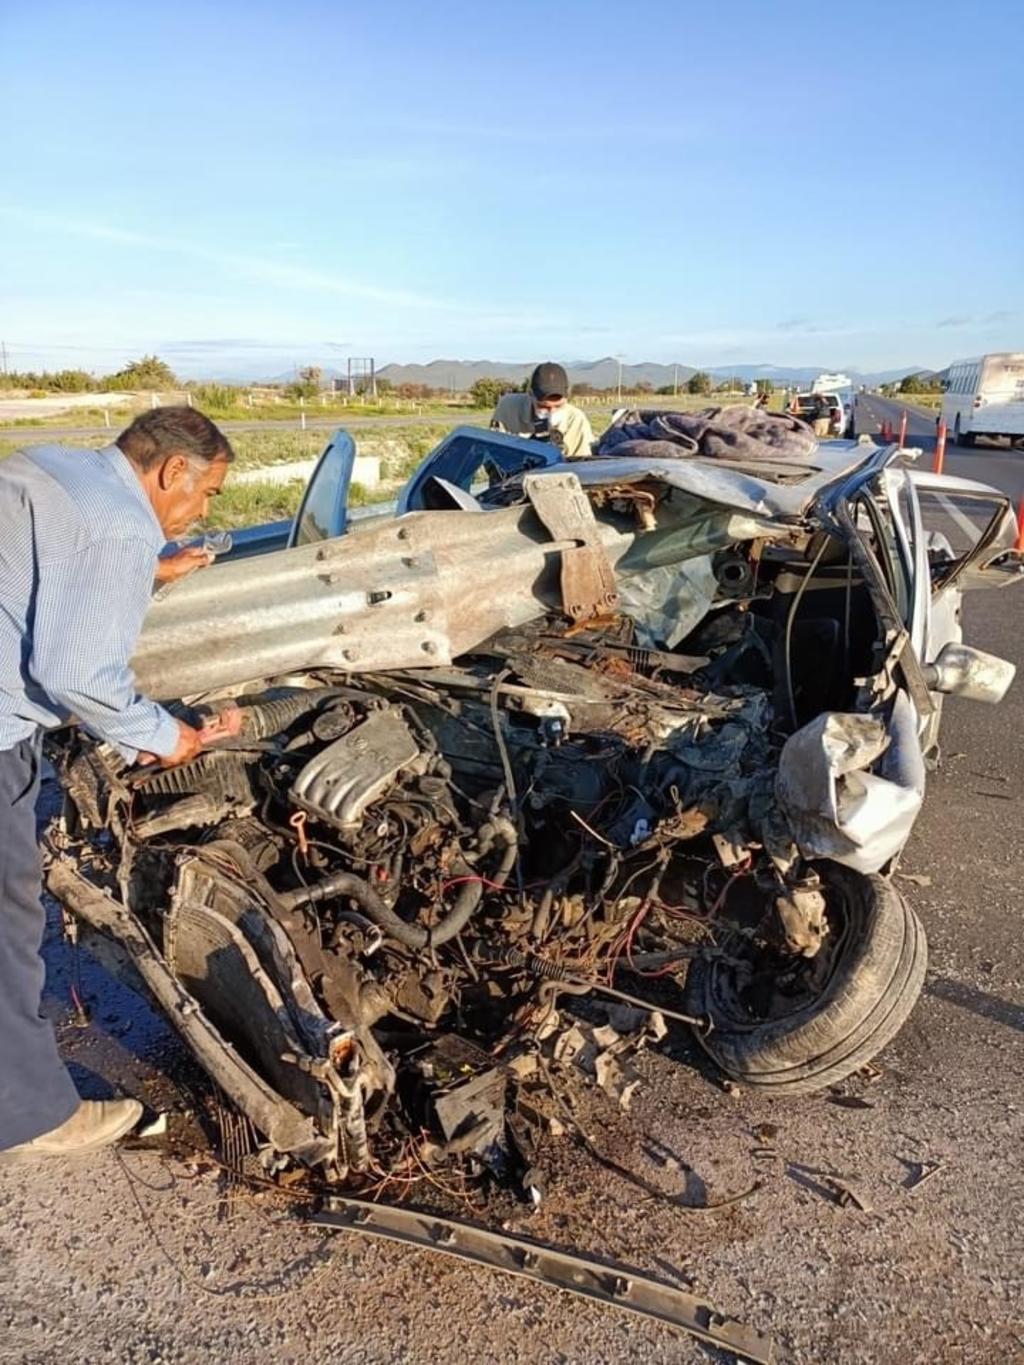 Menor saltillense muere decapitado tras accidente en carretera 57 del municipio de Galeana, Nuevo León